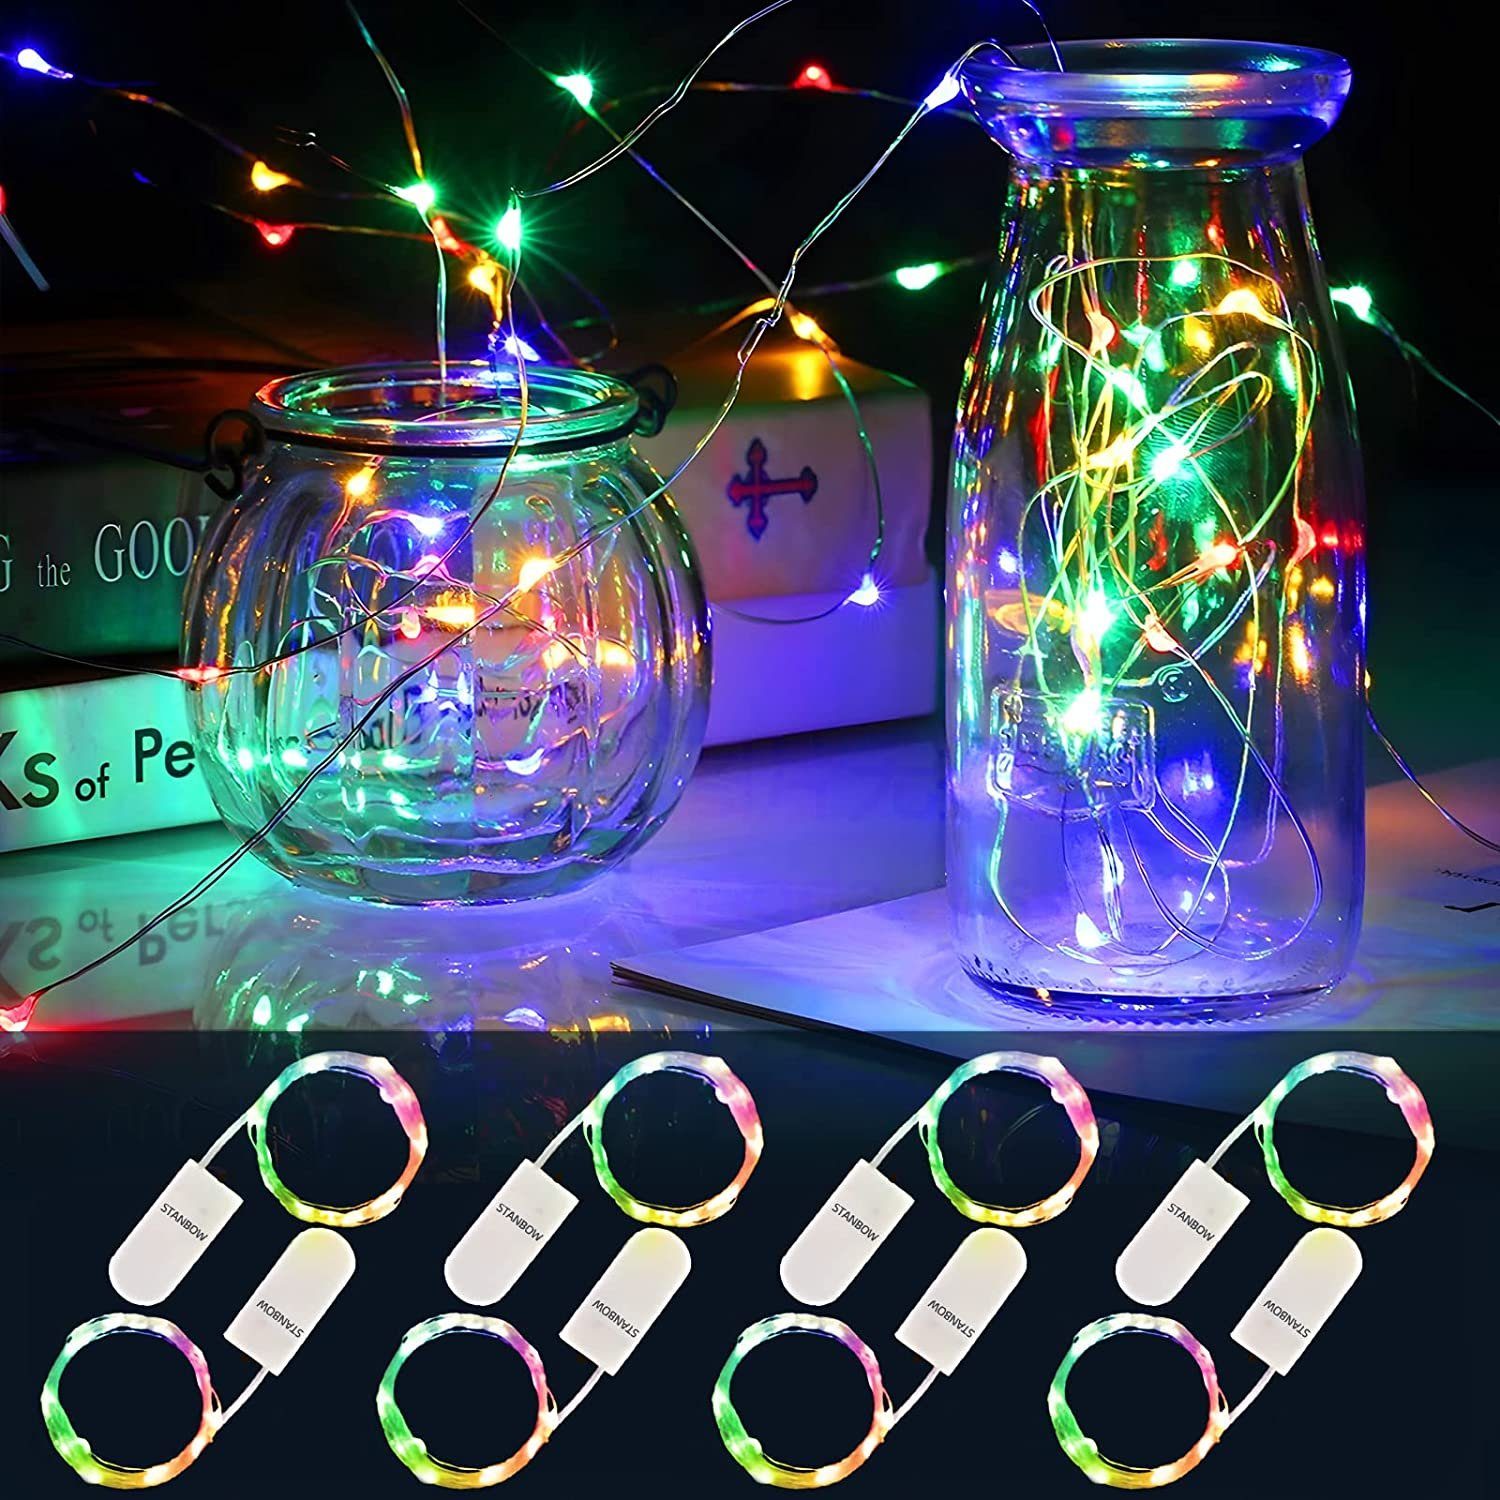 Nettlife LED-Lichterkette 8er Pack Batterie Lichterkette 2M 20 Led mehrfarbig, Weihnachtsdekoration